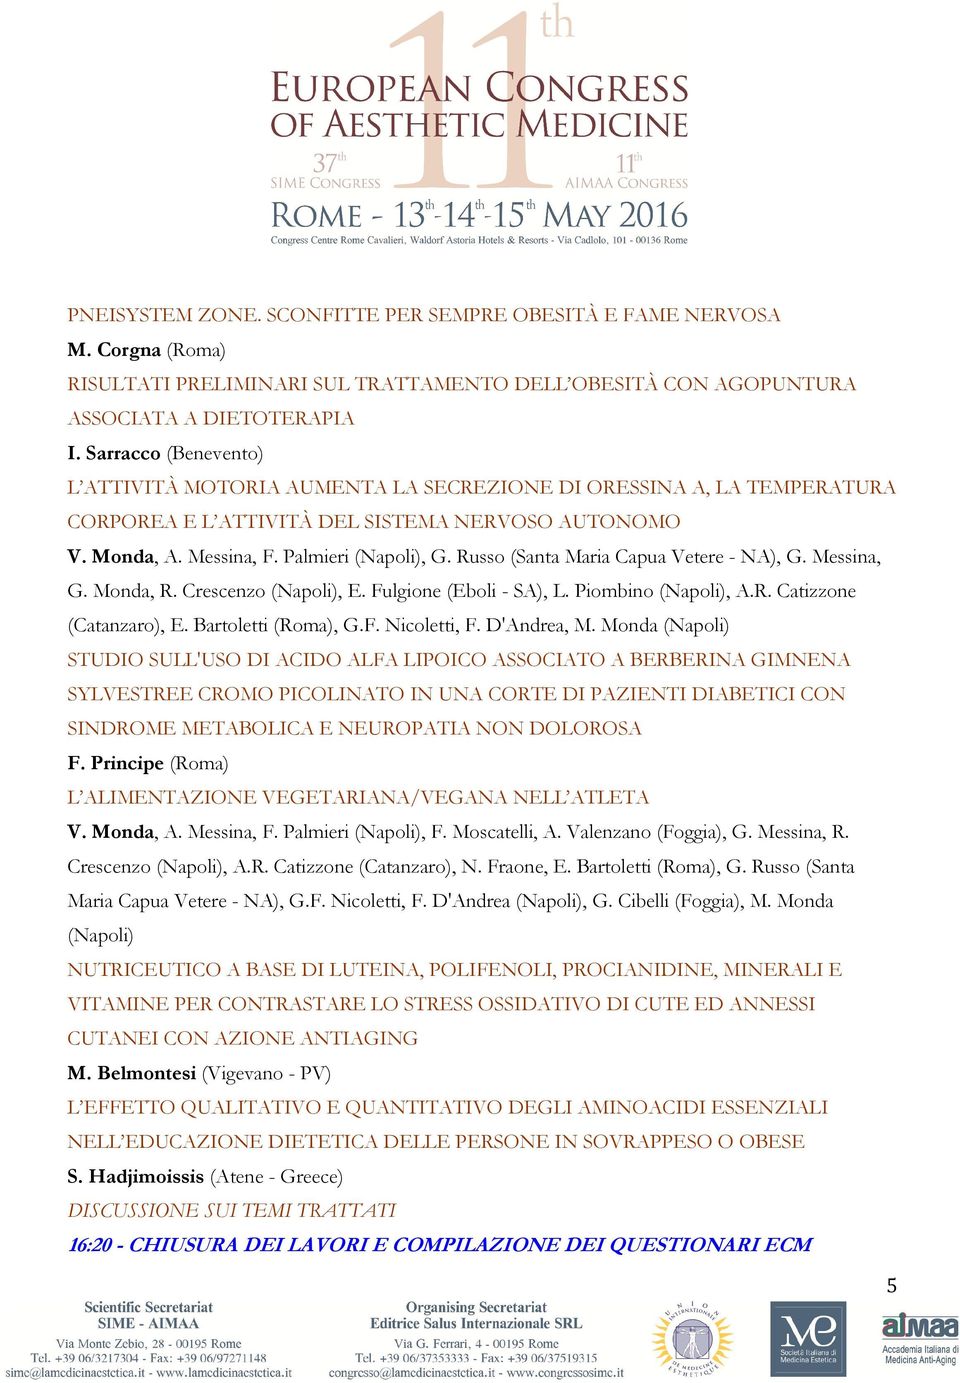 Russo (Santa Maria Capua Vetere - NA), G. Messina, G. Monda, R. Crescenzo (Napoli), E. Fulgione (Eboli - SA), L. Piombino (Napoli), A.R. Catizzone (Catanzaro), E. Bartoletti (Roma), G.F. Nicoletti, F.